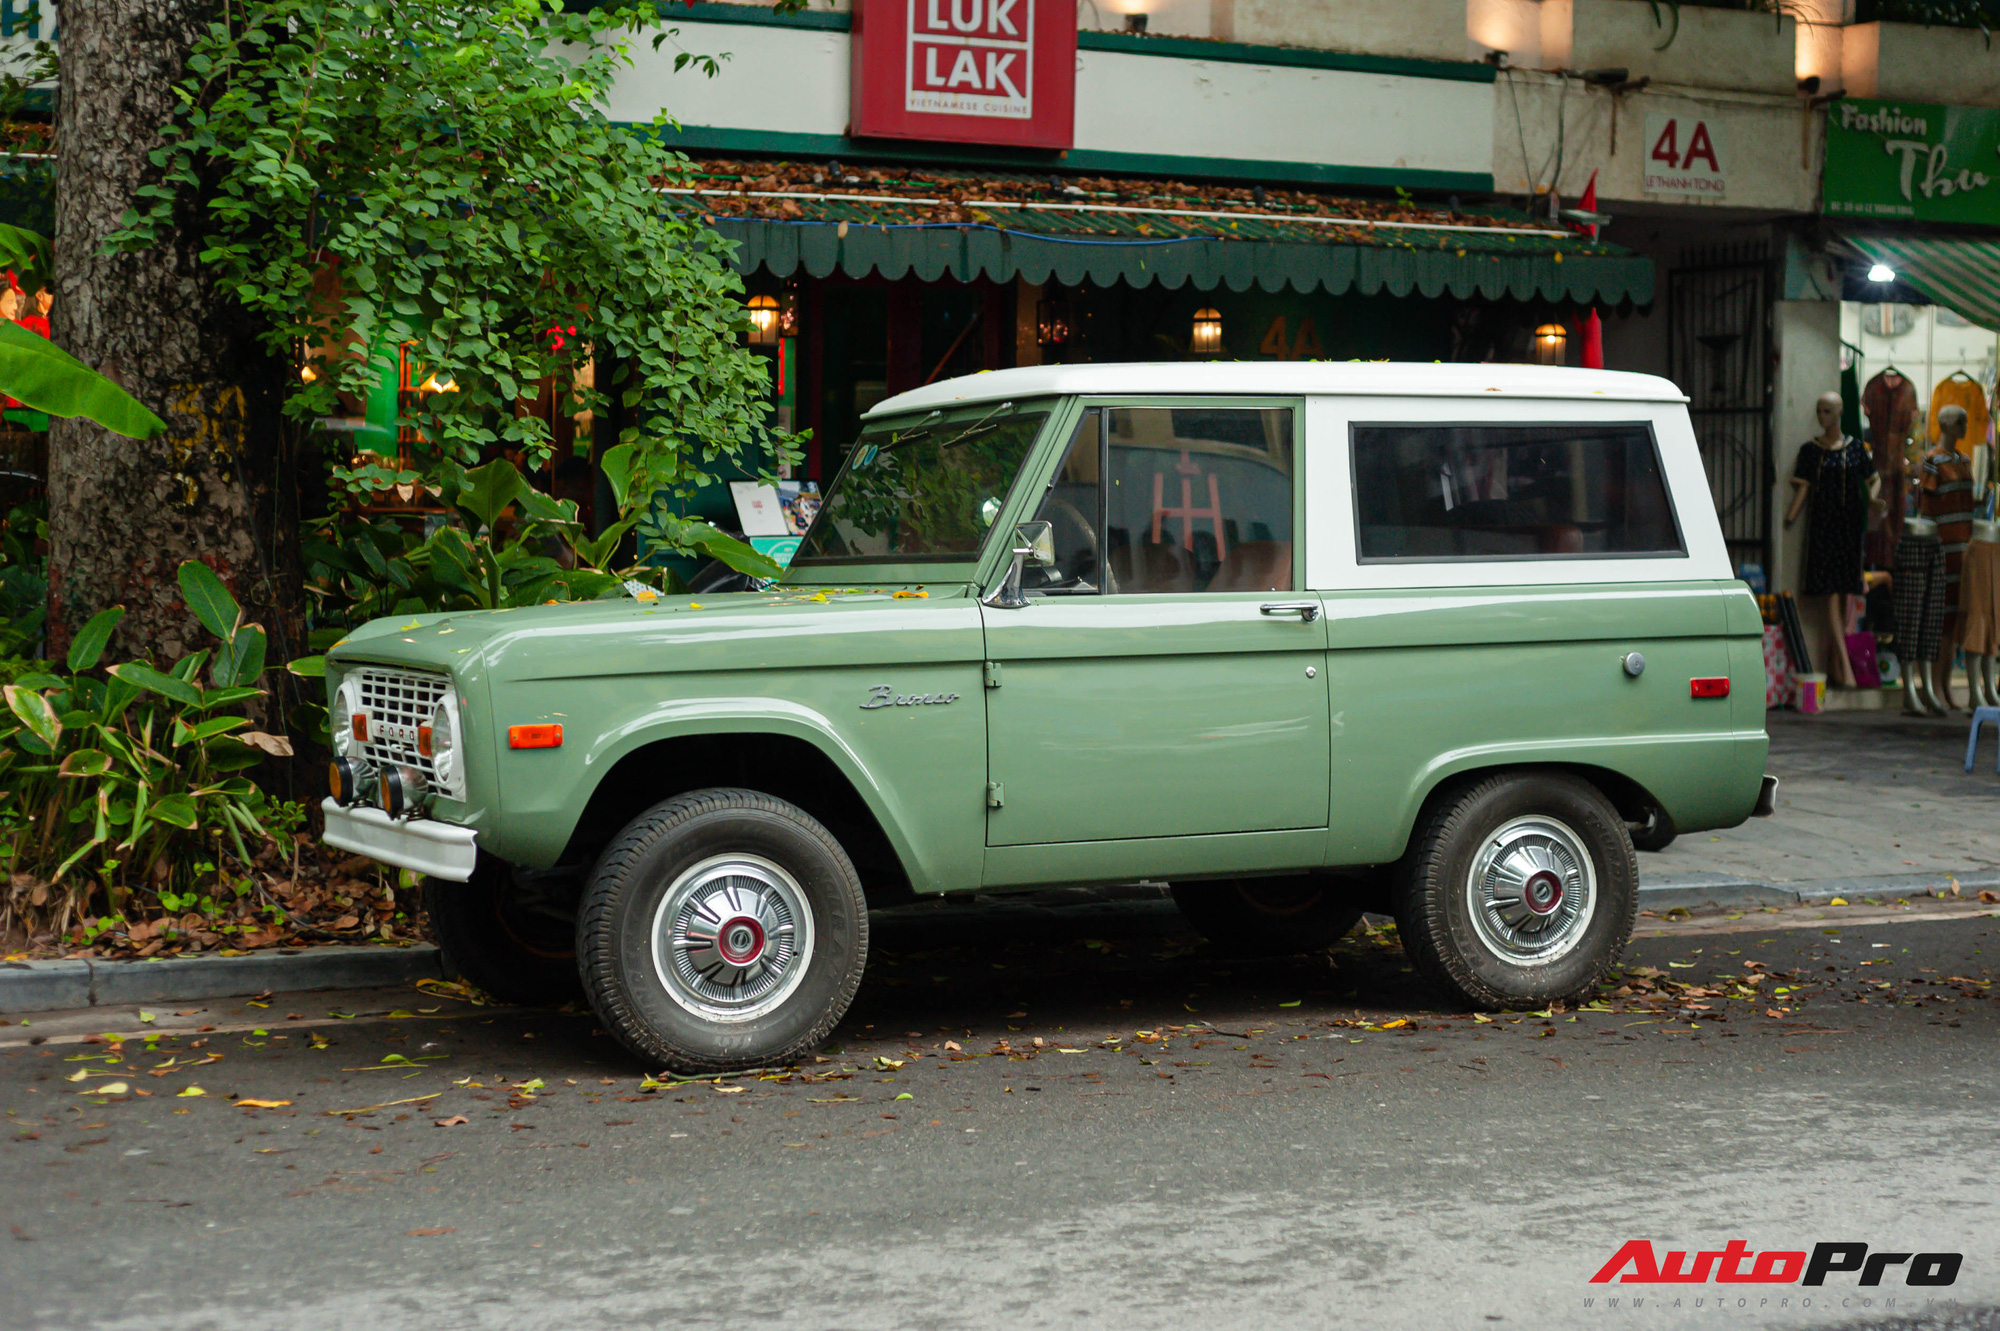 Hàng hiếm Ford Bronco thế hệ đầu tiên bất ngờ xuất hiện tại Hà Nội - Ảnh 1.